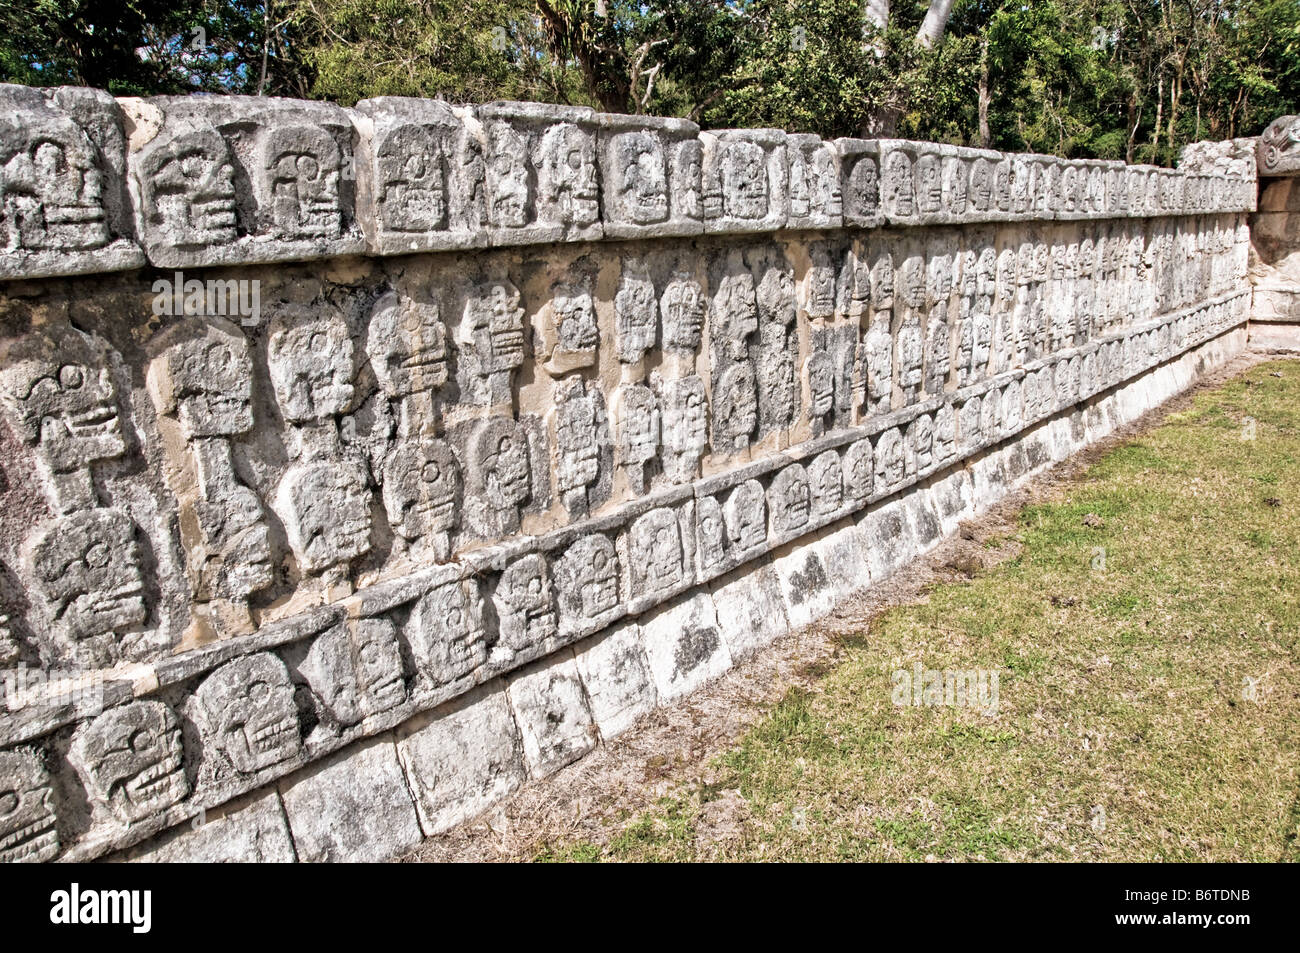 CHICHEN ITZA, Messico - Una parete bassa con teschi di pietra intagliati in modo intricato alle antiche rovine Maya a Chichen Itza, Yucatan, Messico. Chichen Itza, situato sulla penisola dello Yucatan in Messico, è un importante sito archeologico che mostra la ricca storia e la conoscenza scientifica avanzata dell'antica civiltà Maya. E 'più noto per la Piramide Kukulkan, o 'El Castillo', una struttura a quattro lati con 91 gradini su ogni lato, che culmina in un singolo gradino in cima per rappresentare i 365 giorni dell'anno solare. Foto Stock